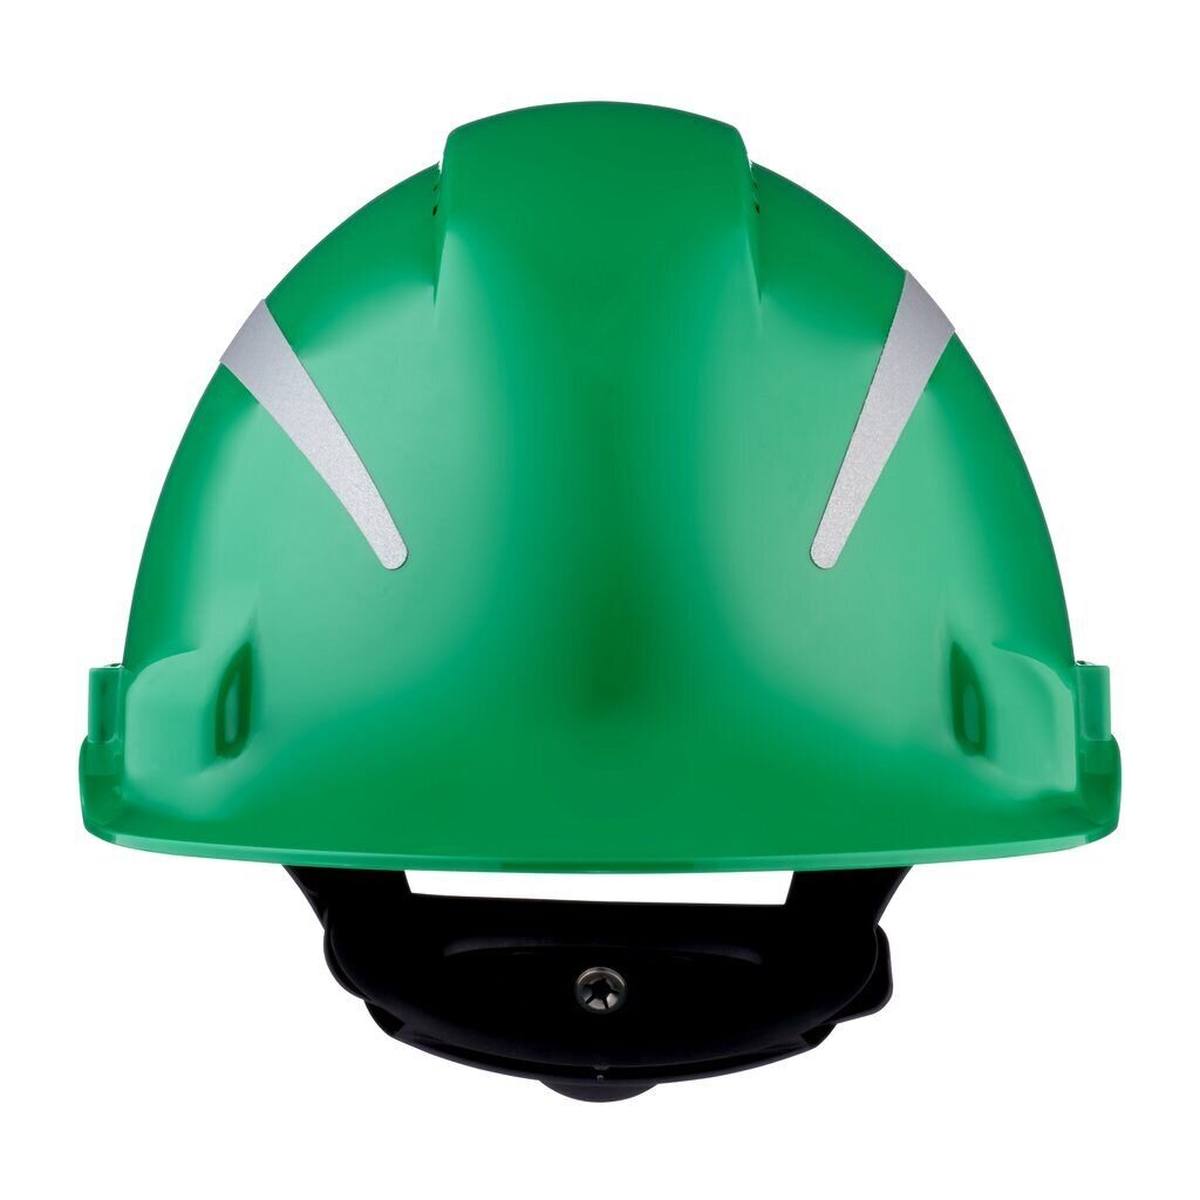 3M G3000 Schutzhelm mit UV-Indikator, grün, ABS, belüftet Ratschenverschluss, Kunststoffschweißband, Reflex-Aufkleber